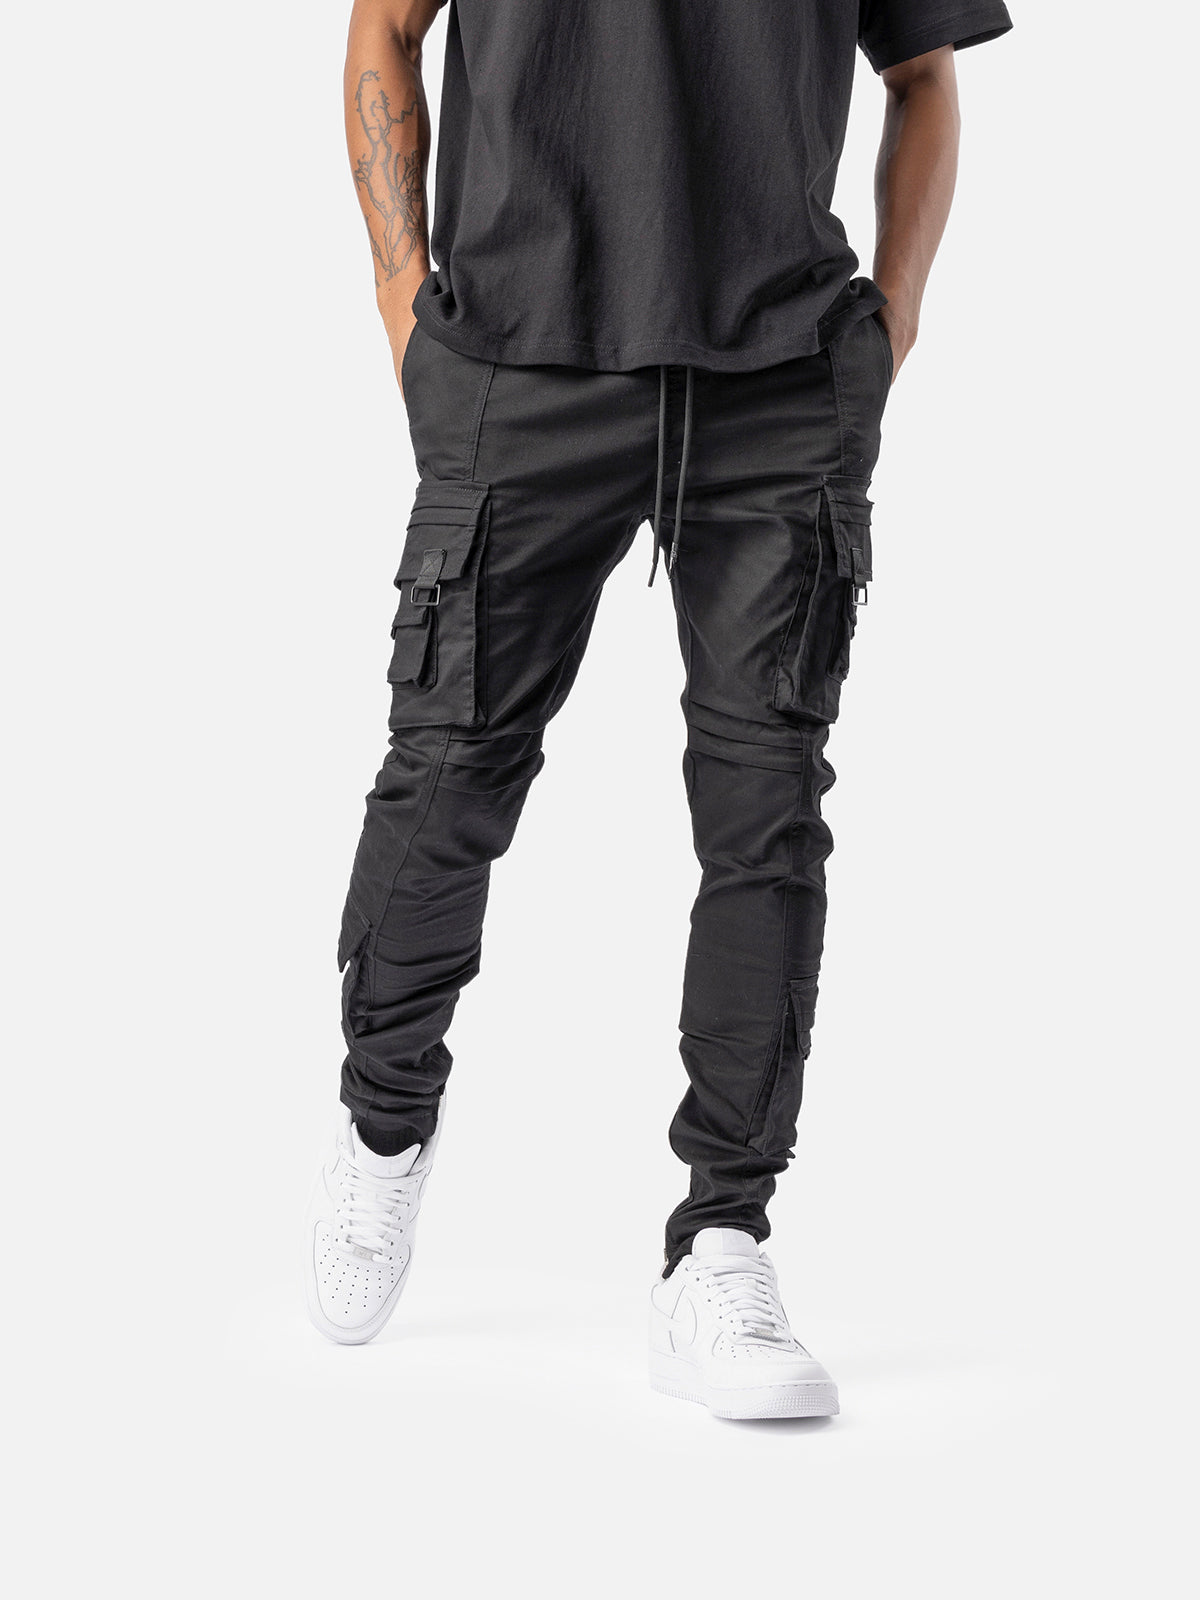 V2 Cargo Pants - Olive | Blacktailor – BLACKTAILOR